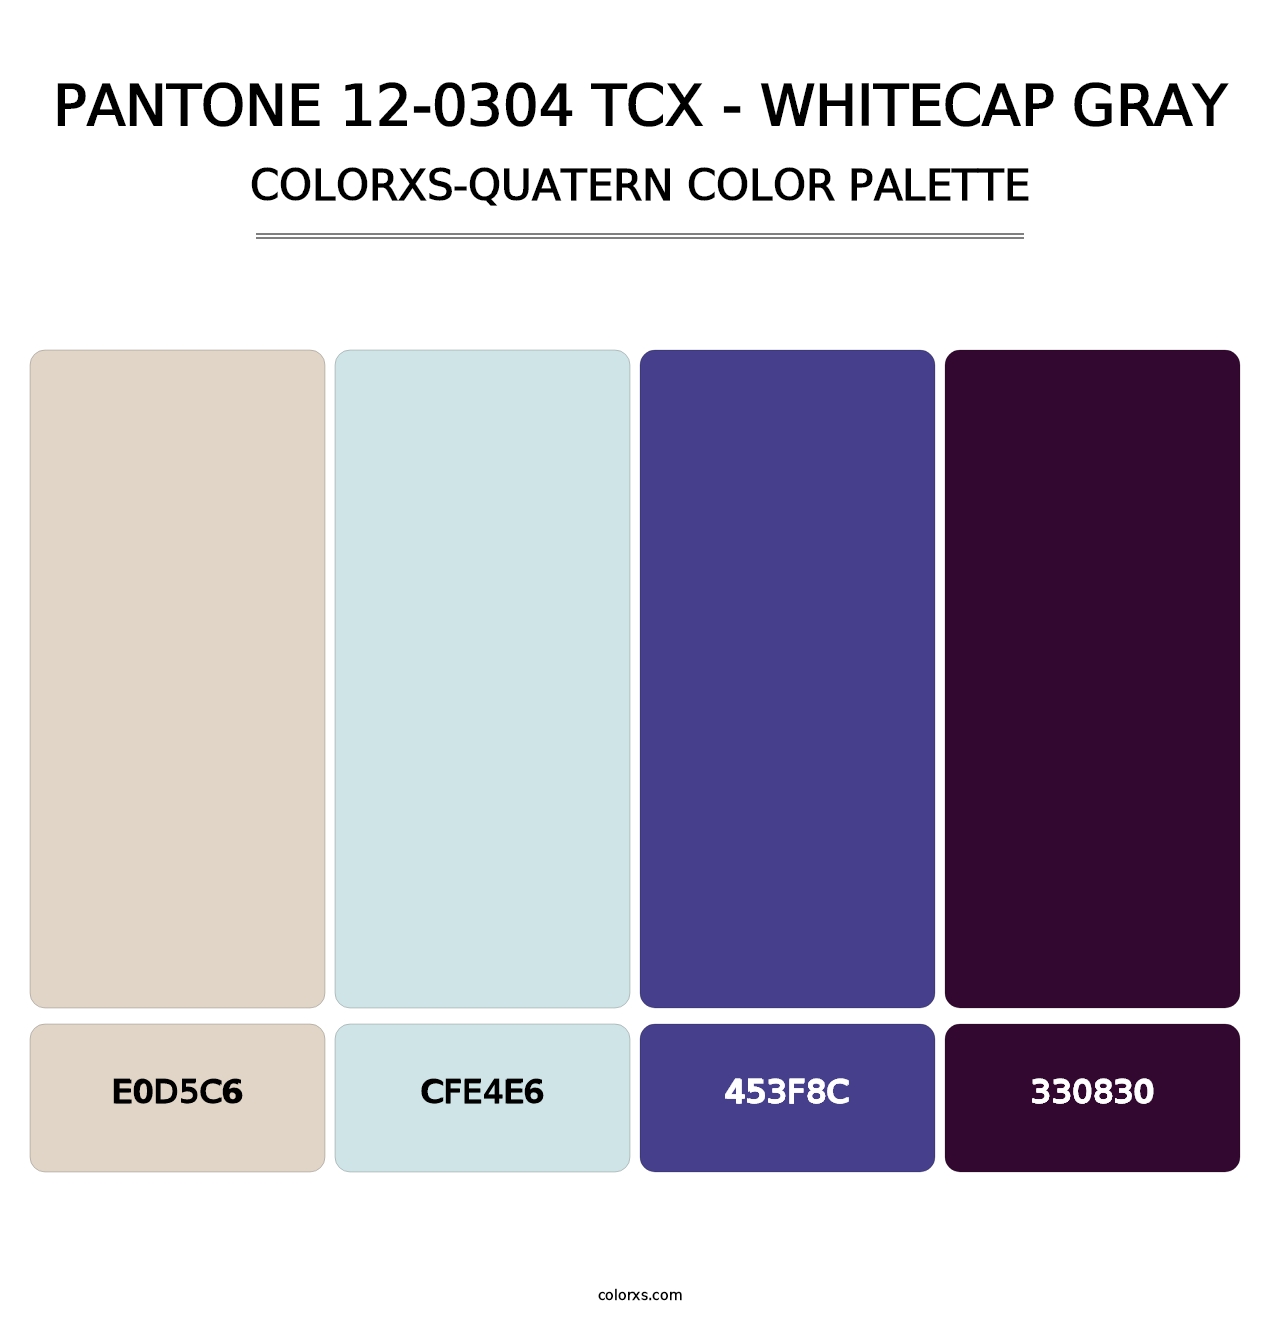 PANTONE 12-0304 TCX - Whitecap Gray - Colorxs Quatern Palette